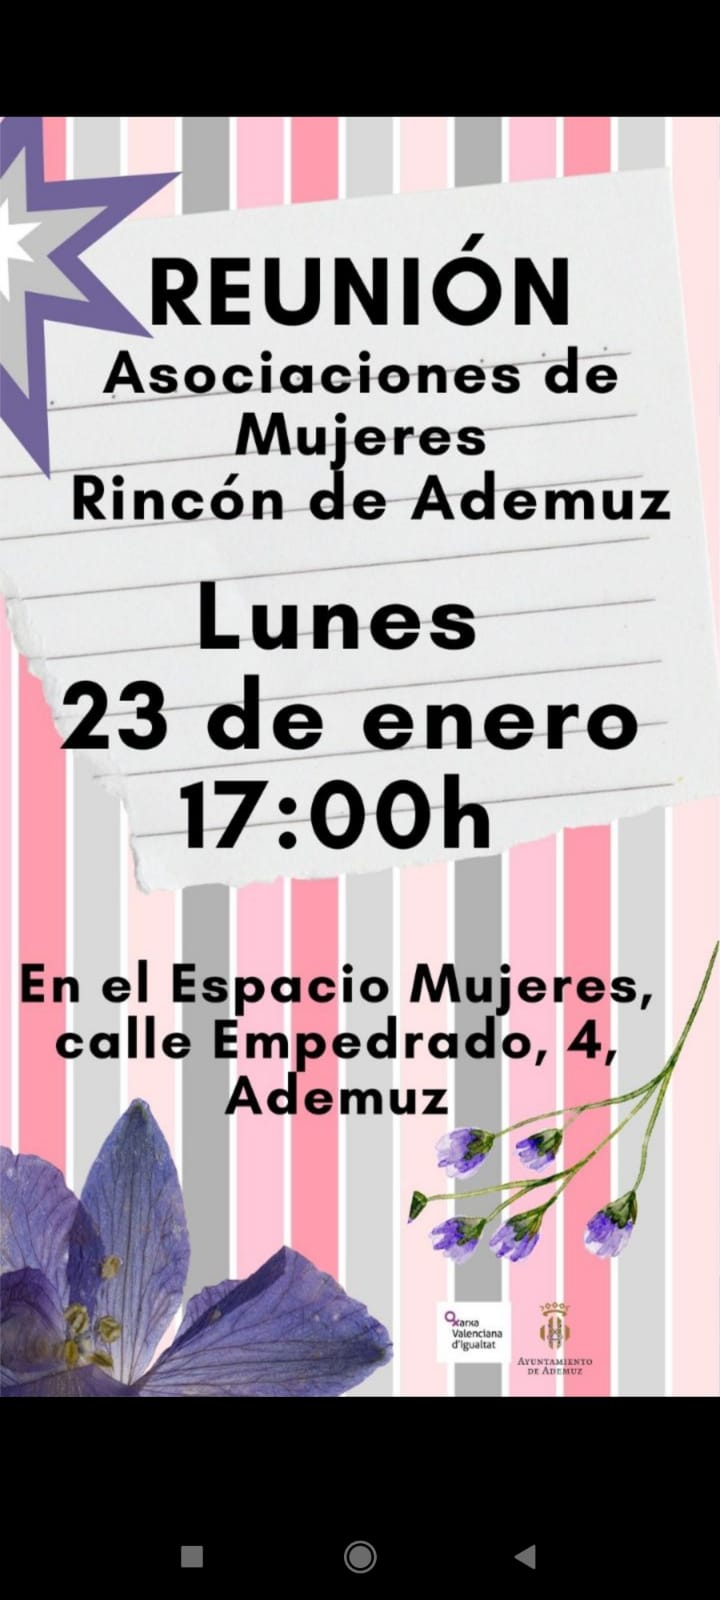 Reunión Asociación de Mujeres del Rincón de Ademuz ADEMUZ